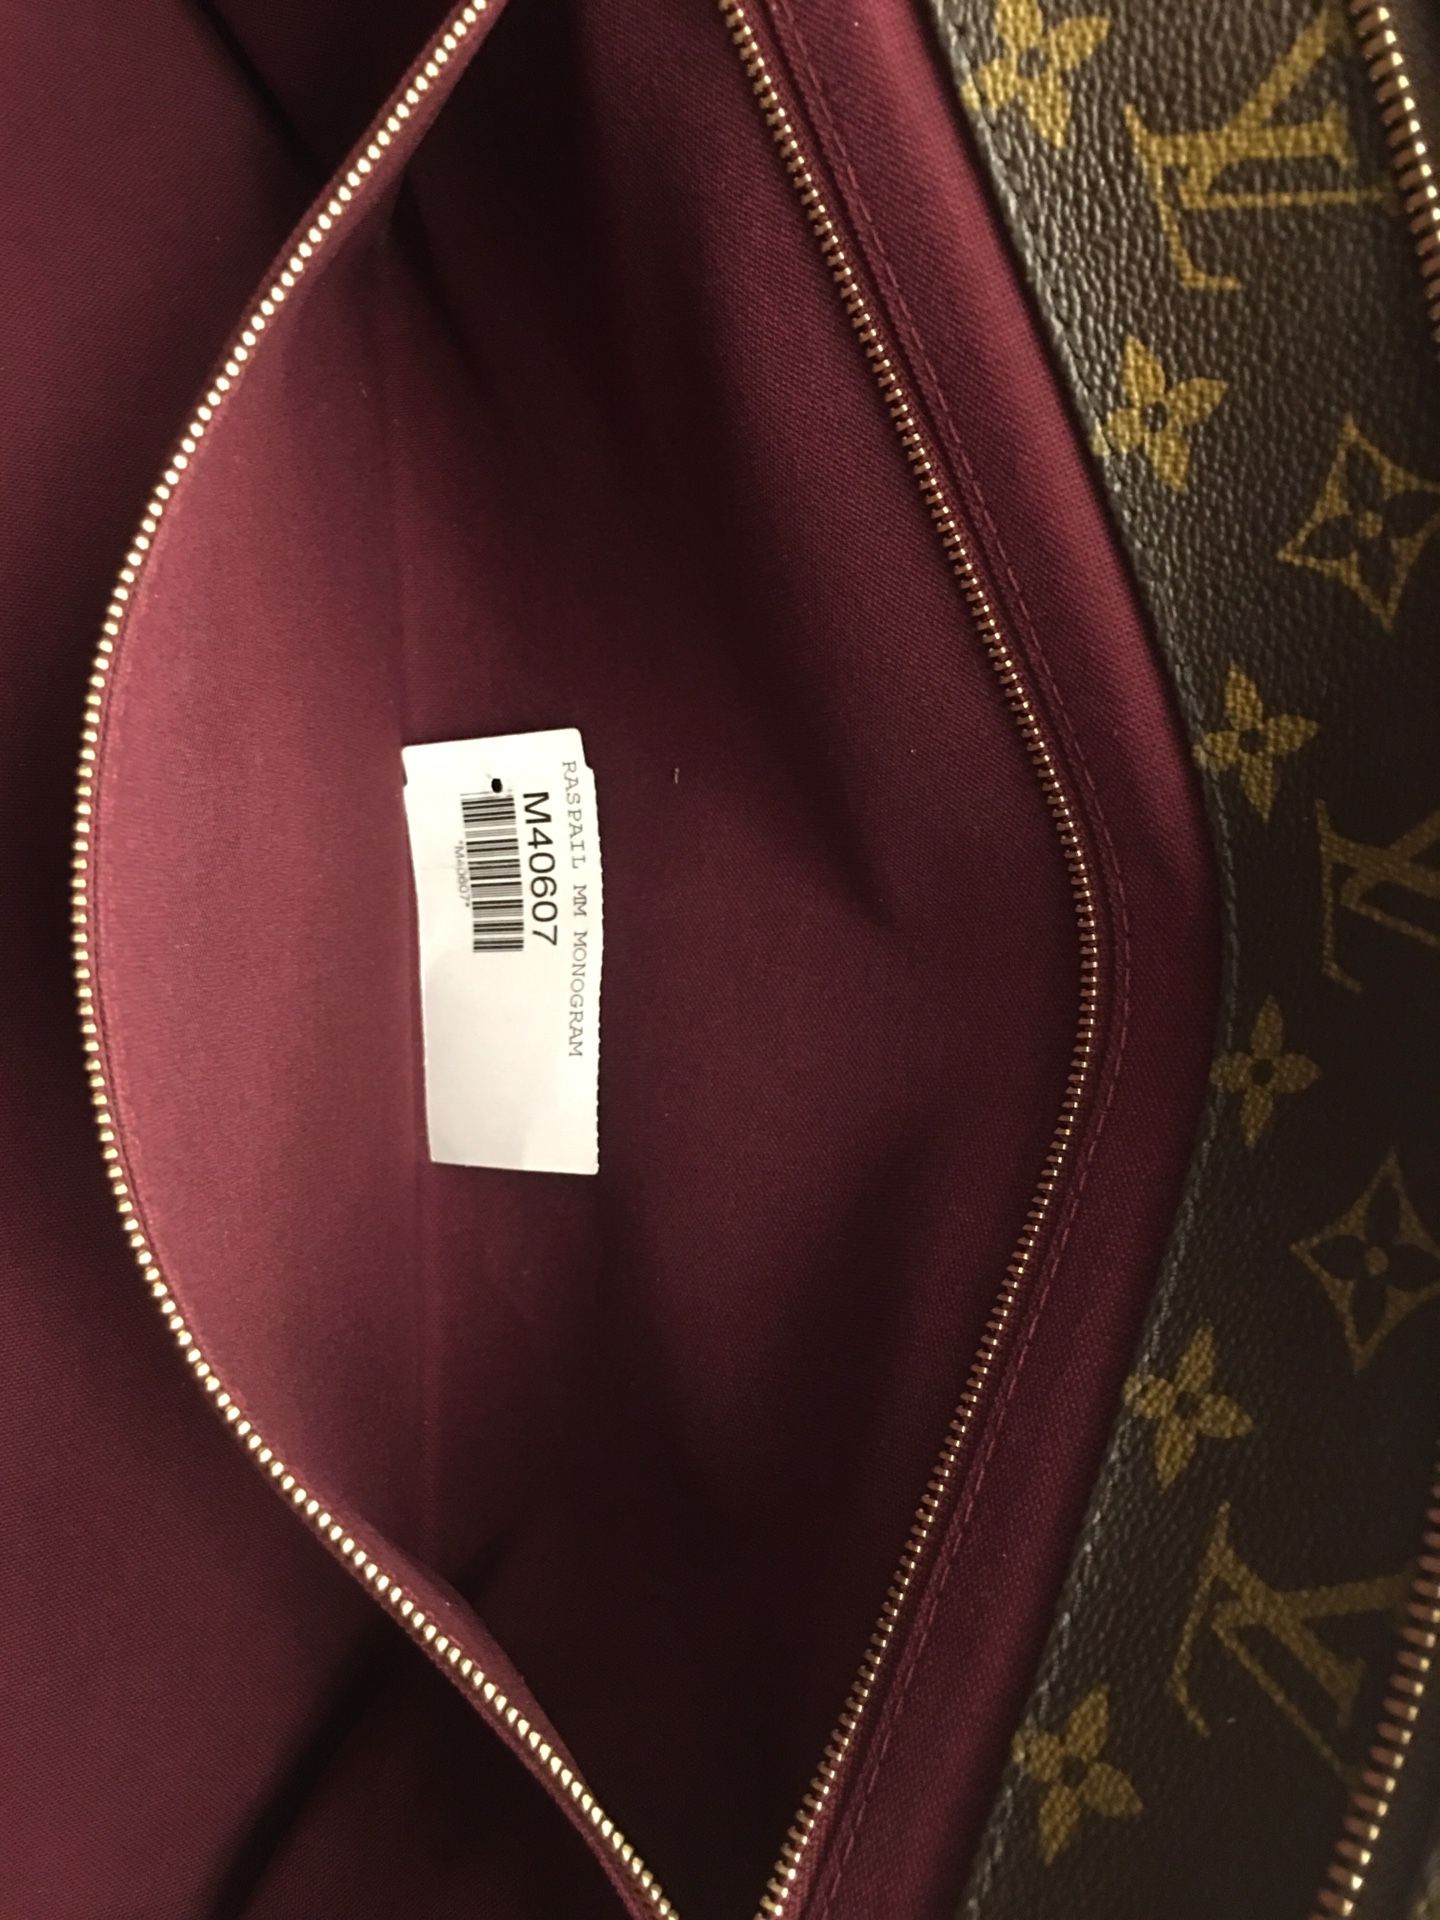 Authentic Louis Vuitton Raspail MM Monogram Shoulder Bag SR0132 for Sale in  Chandler, AZ - OfferUp